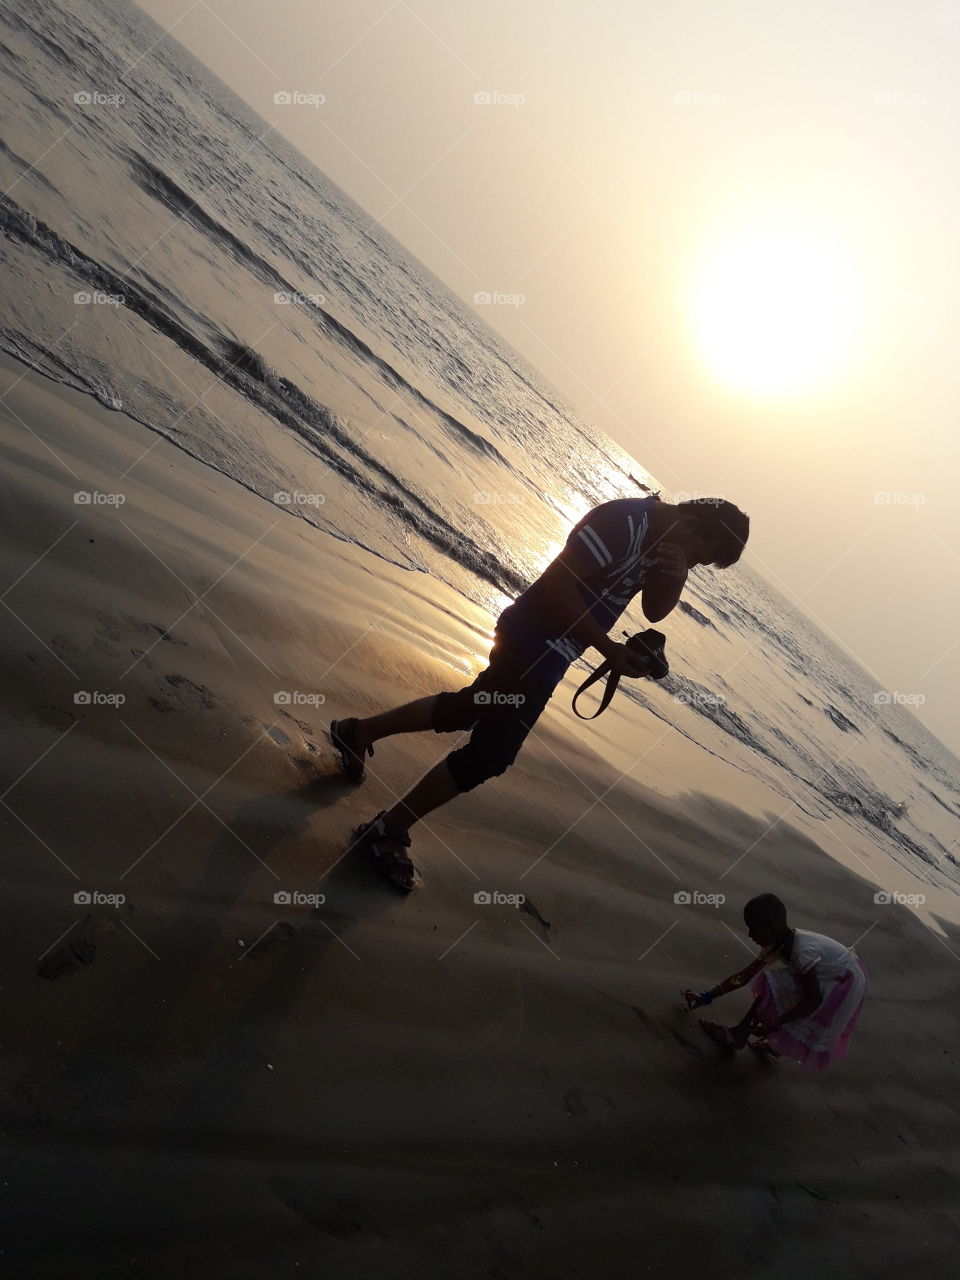 Bangladesh kuakata see beach